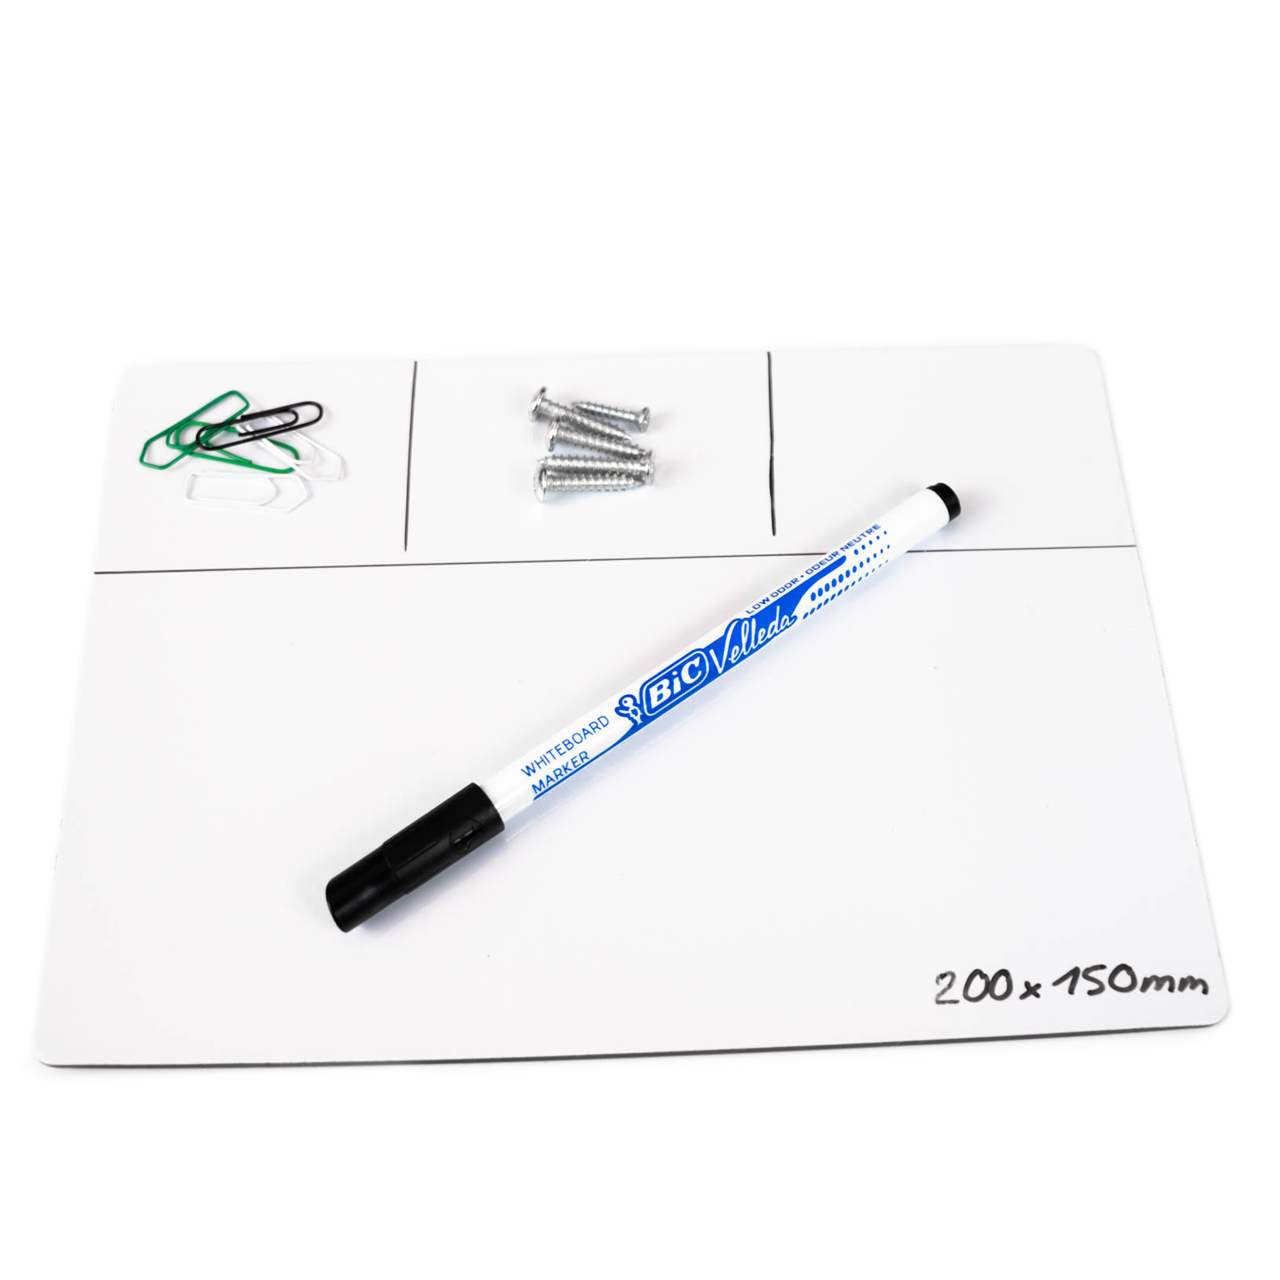 Magnetmatte Reparaturmatte magnetisch weiß mit Stift